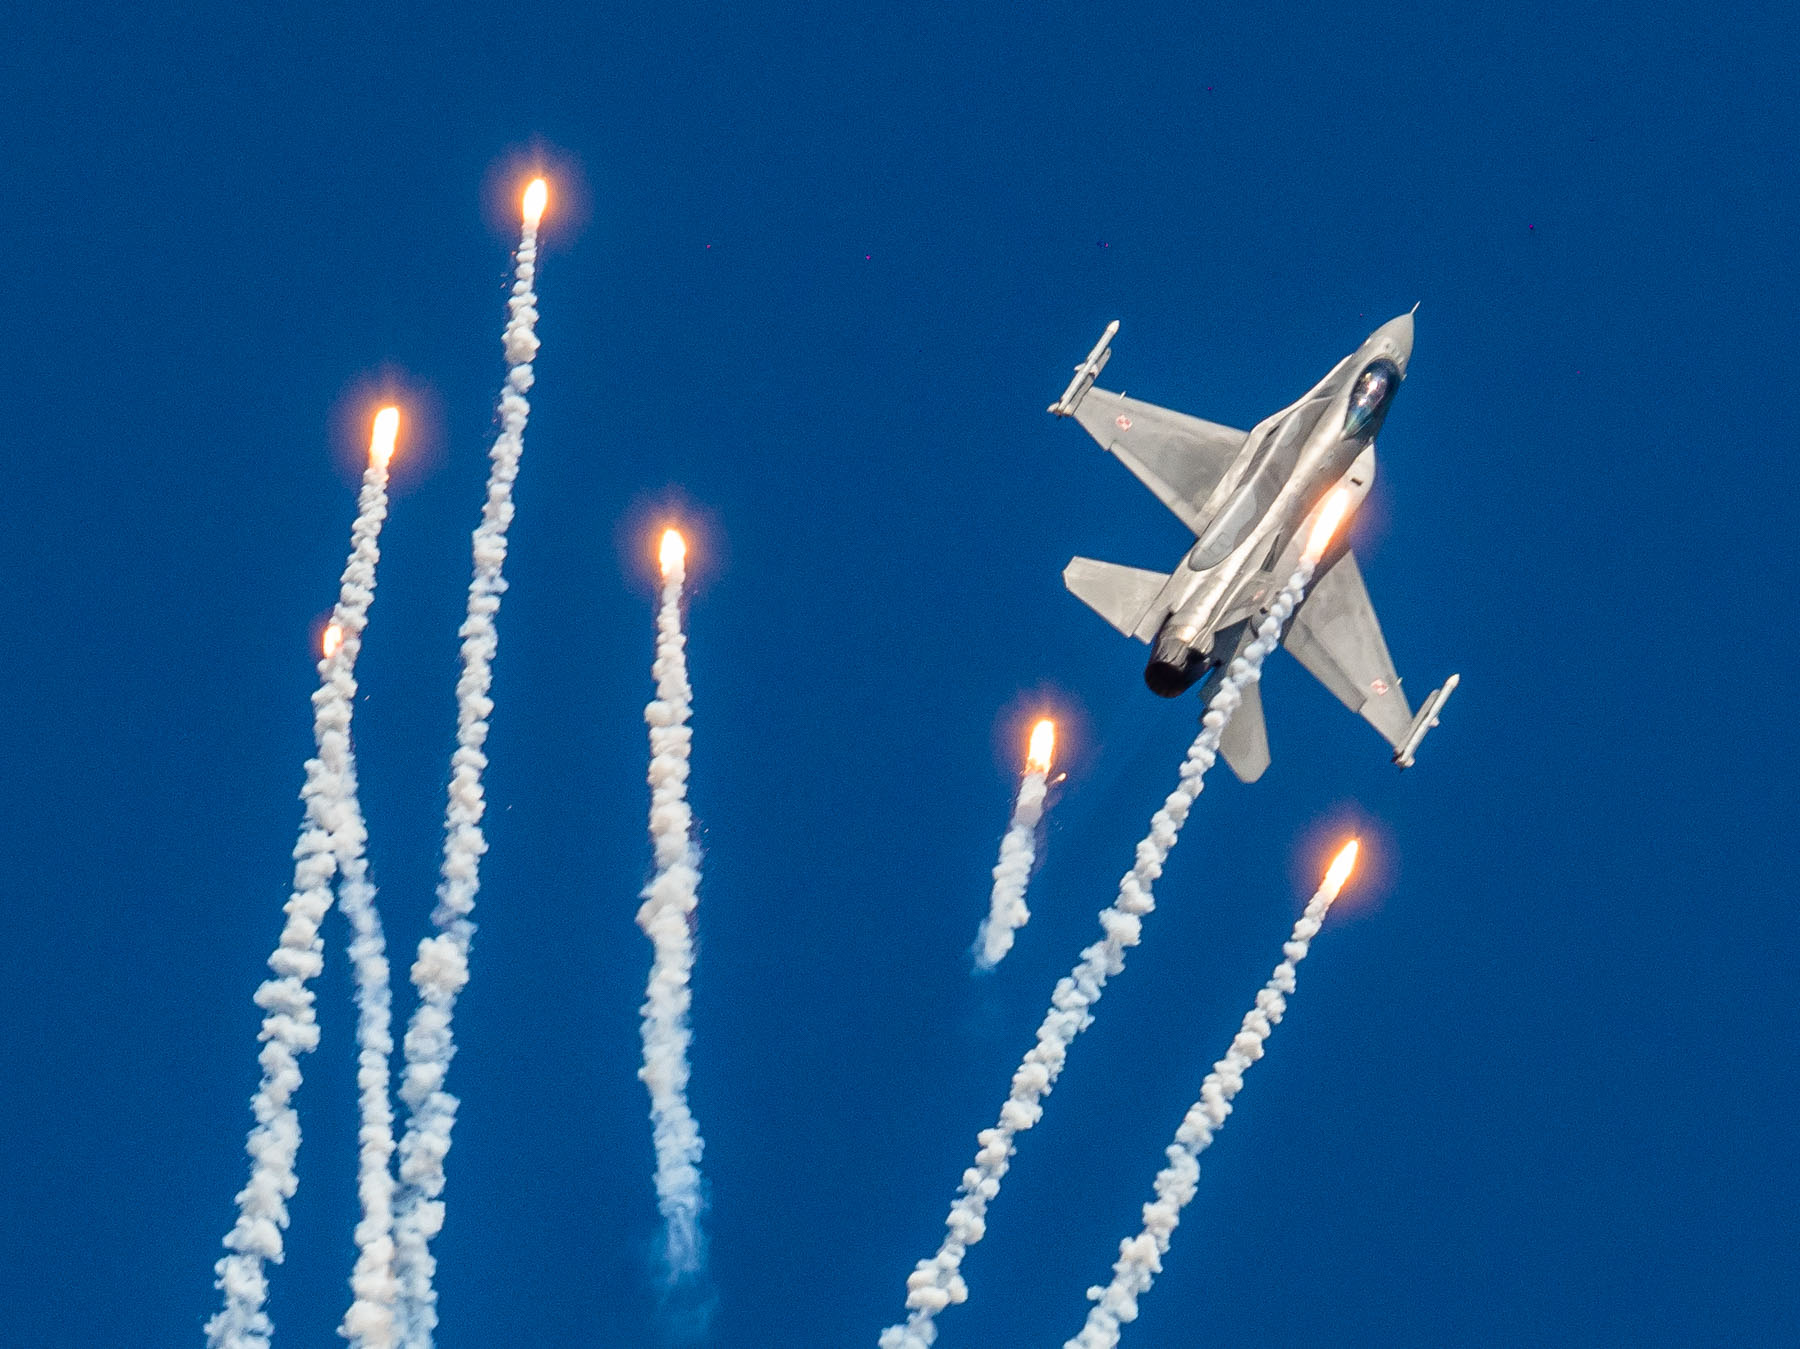 Myśliwiec wojskowy F16 leci pionowo w górę, otacza go 6 wystrzelonych flar - ognistych kul ciągnących za sobą smugę dymu.